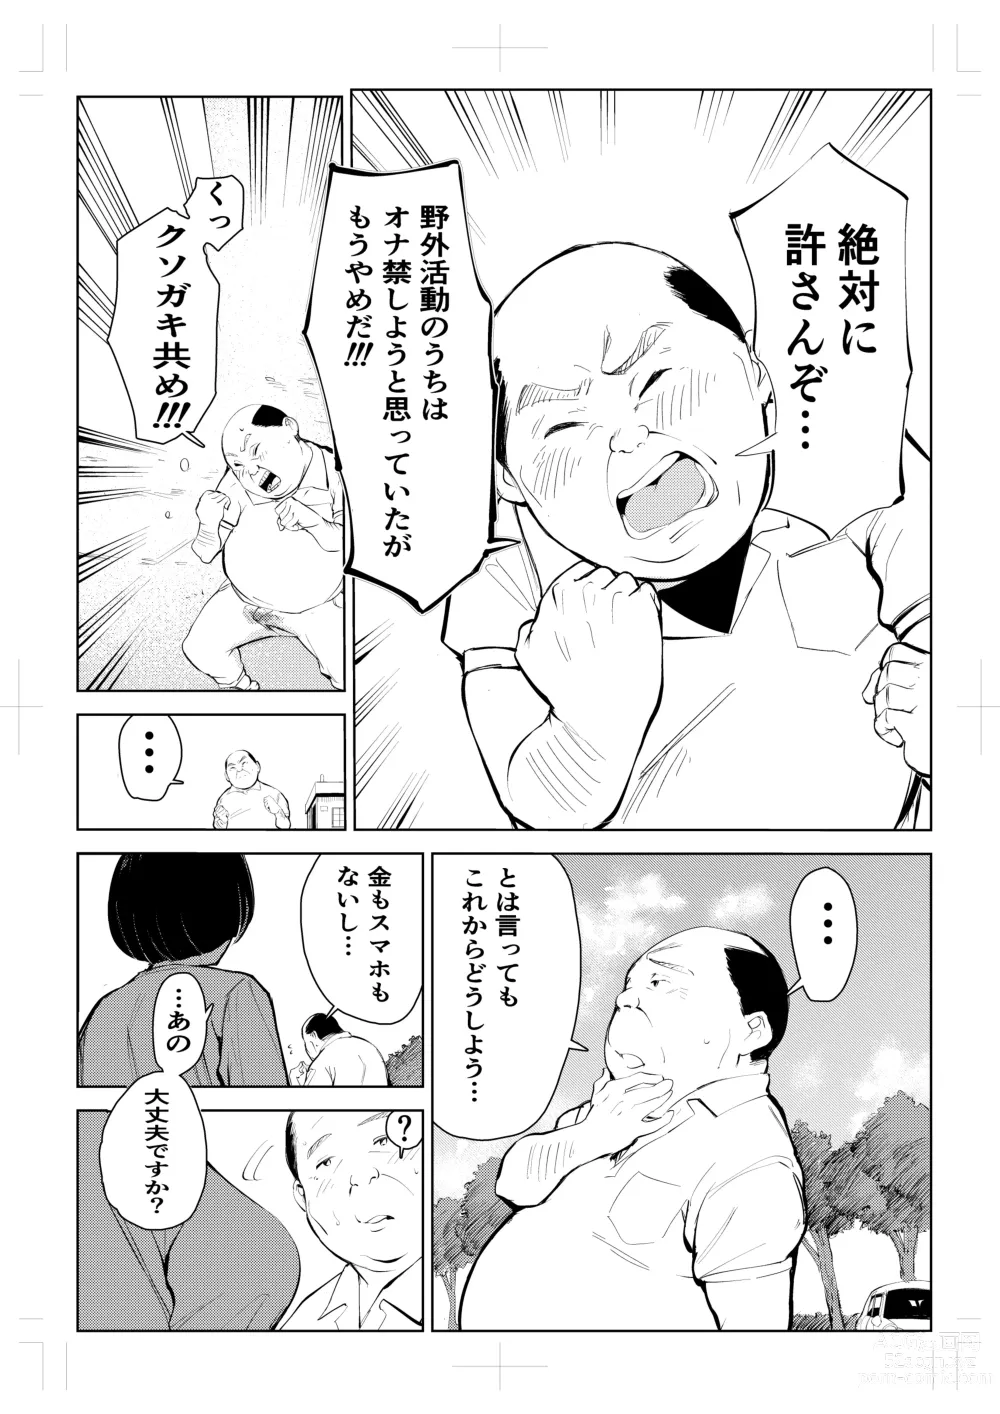 Page 15 of doujinshi 40-sai no Mahoutsukai 4